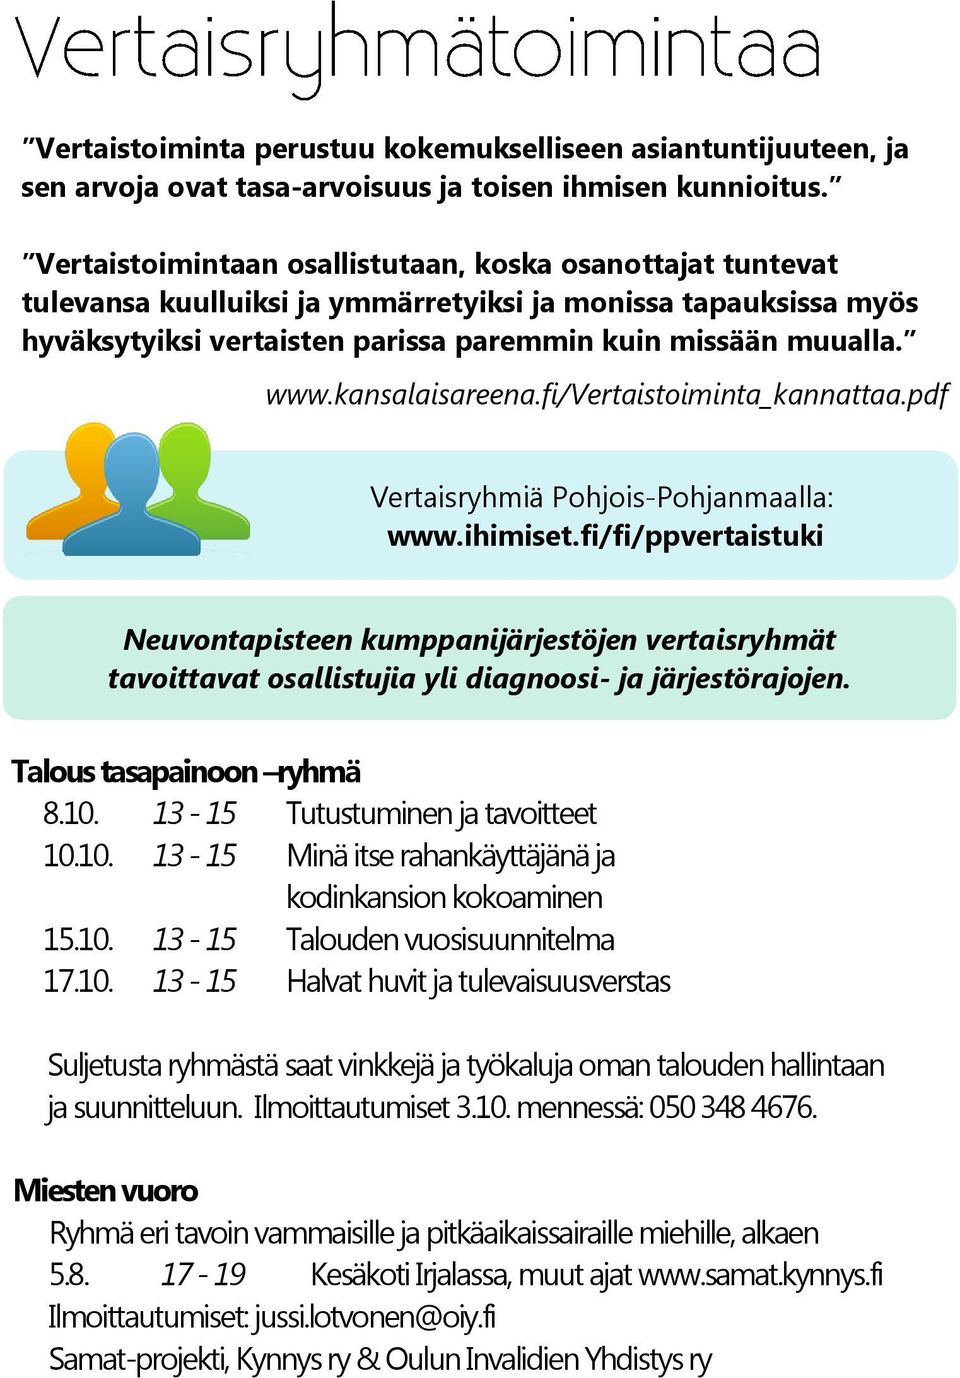 kansalaisareena.fi/vertaistoiminta_kannattaa.pdf Vertaisryhmiä Pohjois-Pohjanmaalla: www.ihimiset.